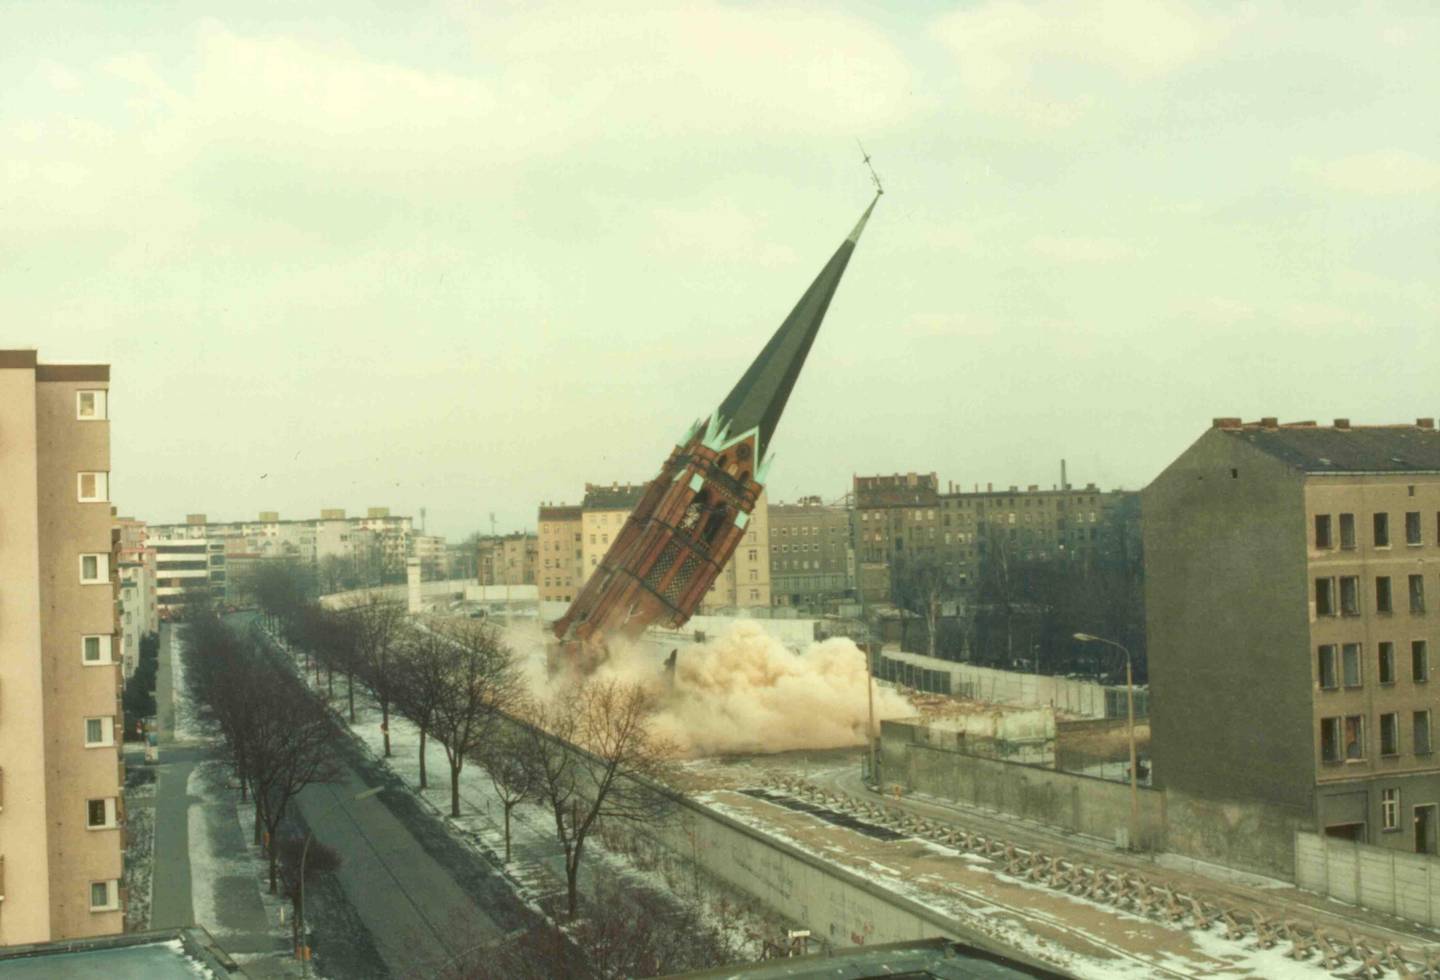 For å sikre en fri skuddlinje langs Berlinmuren måtte alle bygninger vekk. I 1985 var turen kommet til Forsoningskirken.